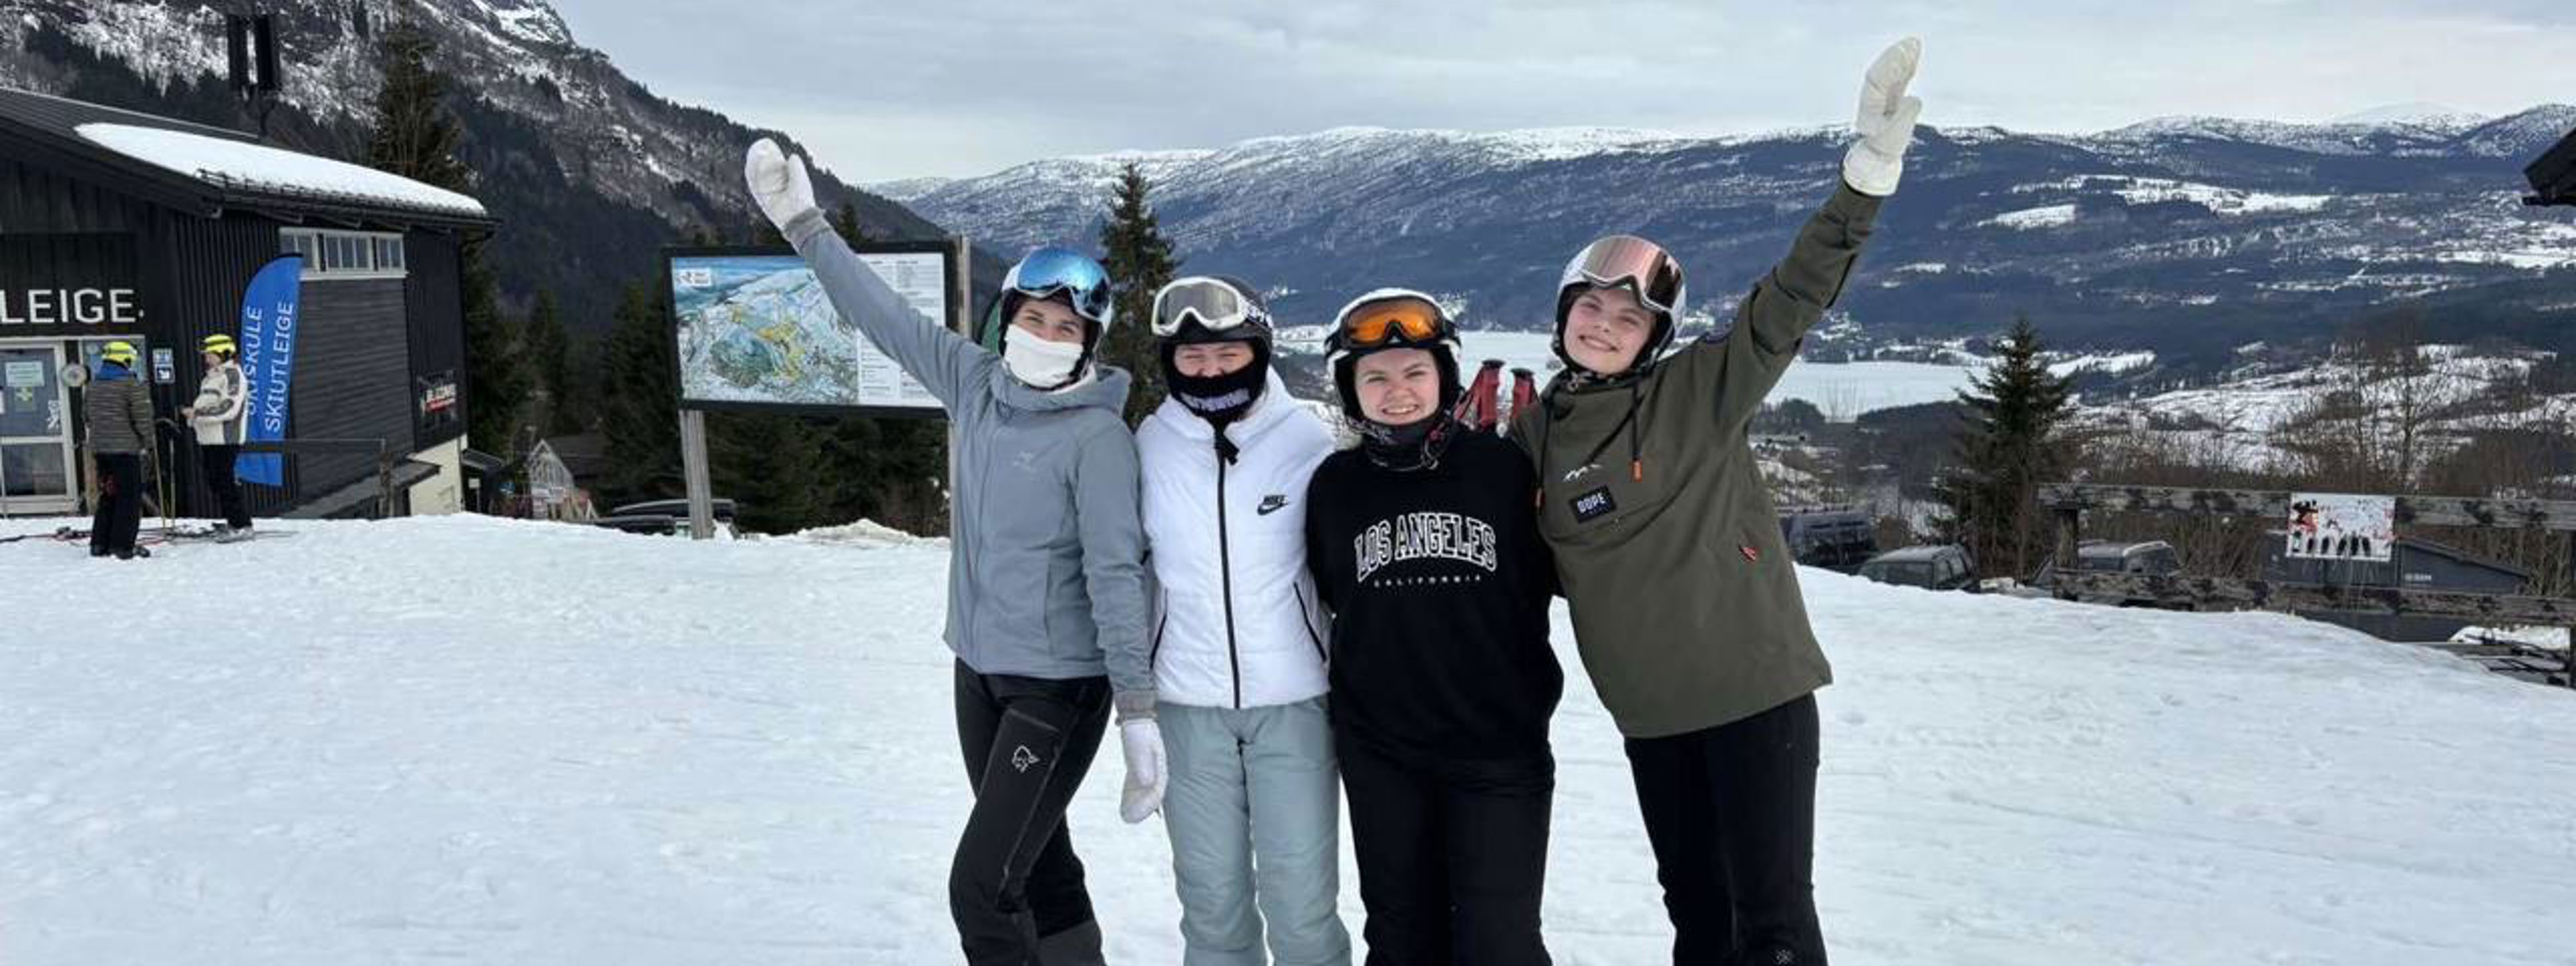 Fire jenter som står på slalomski påVoss